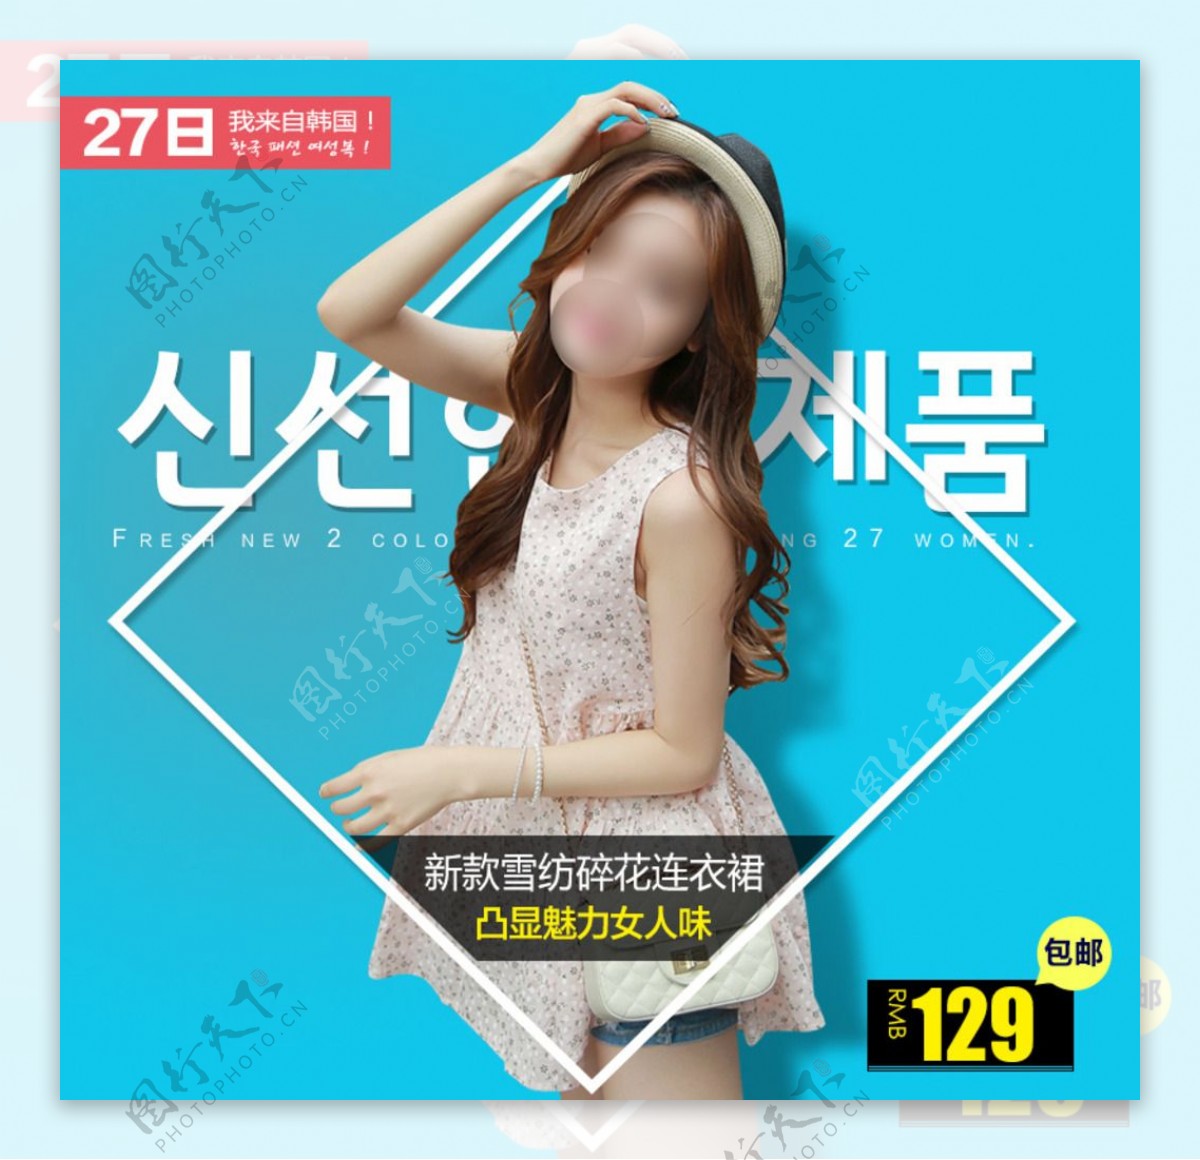 淘宝韩版女装直通车推广图模版图图片